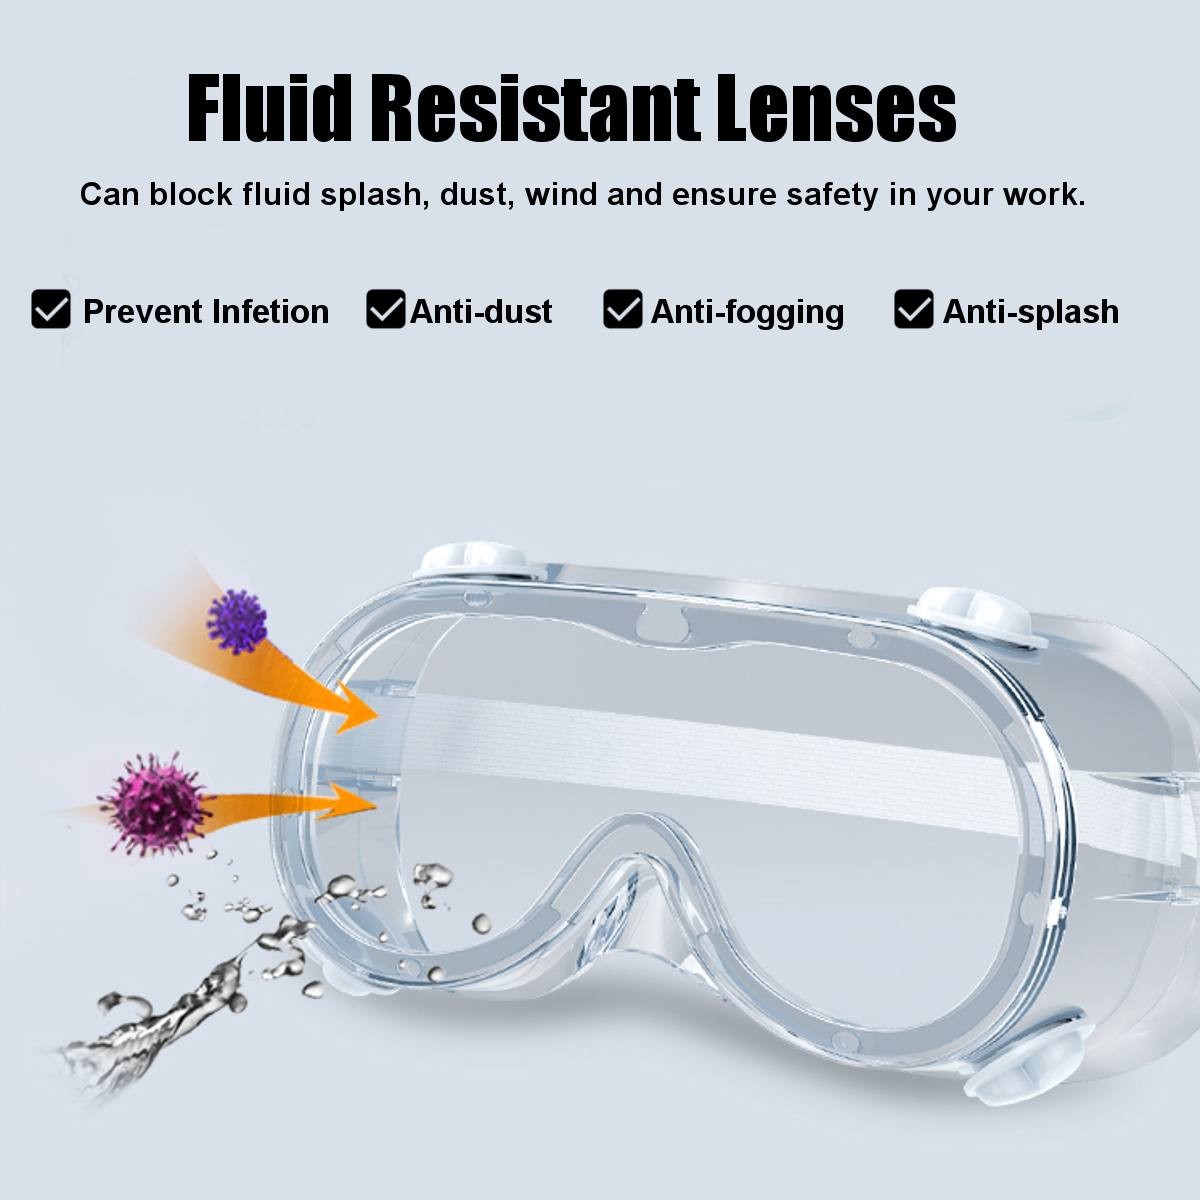 προστατευτικά γυαλιά έναντι βακτηρίων και ιών